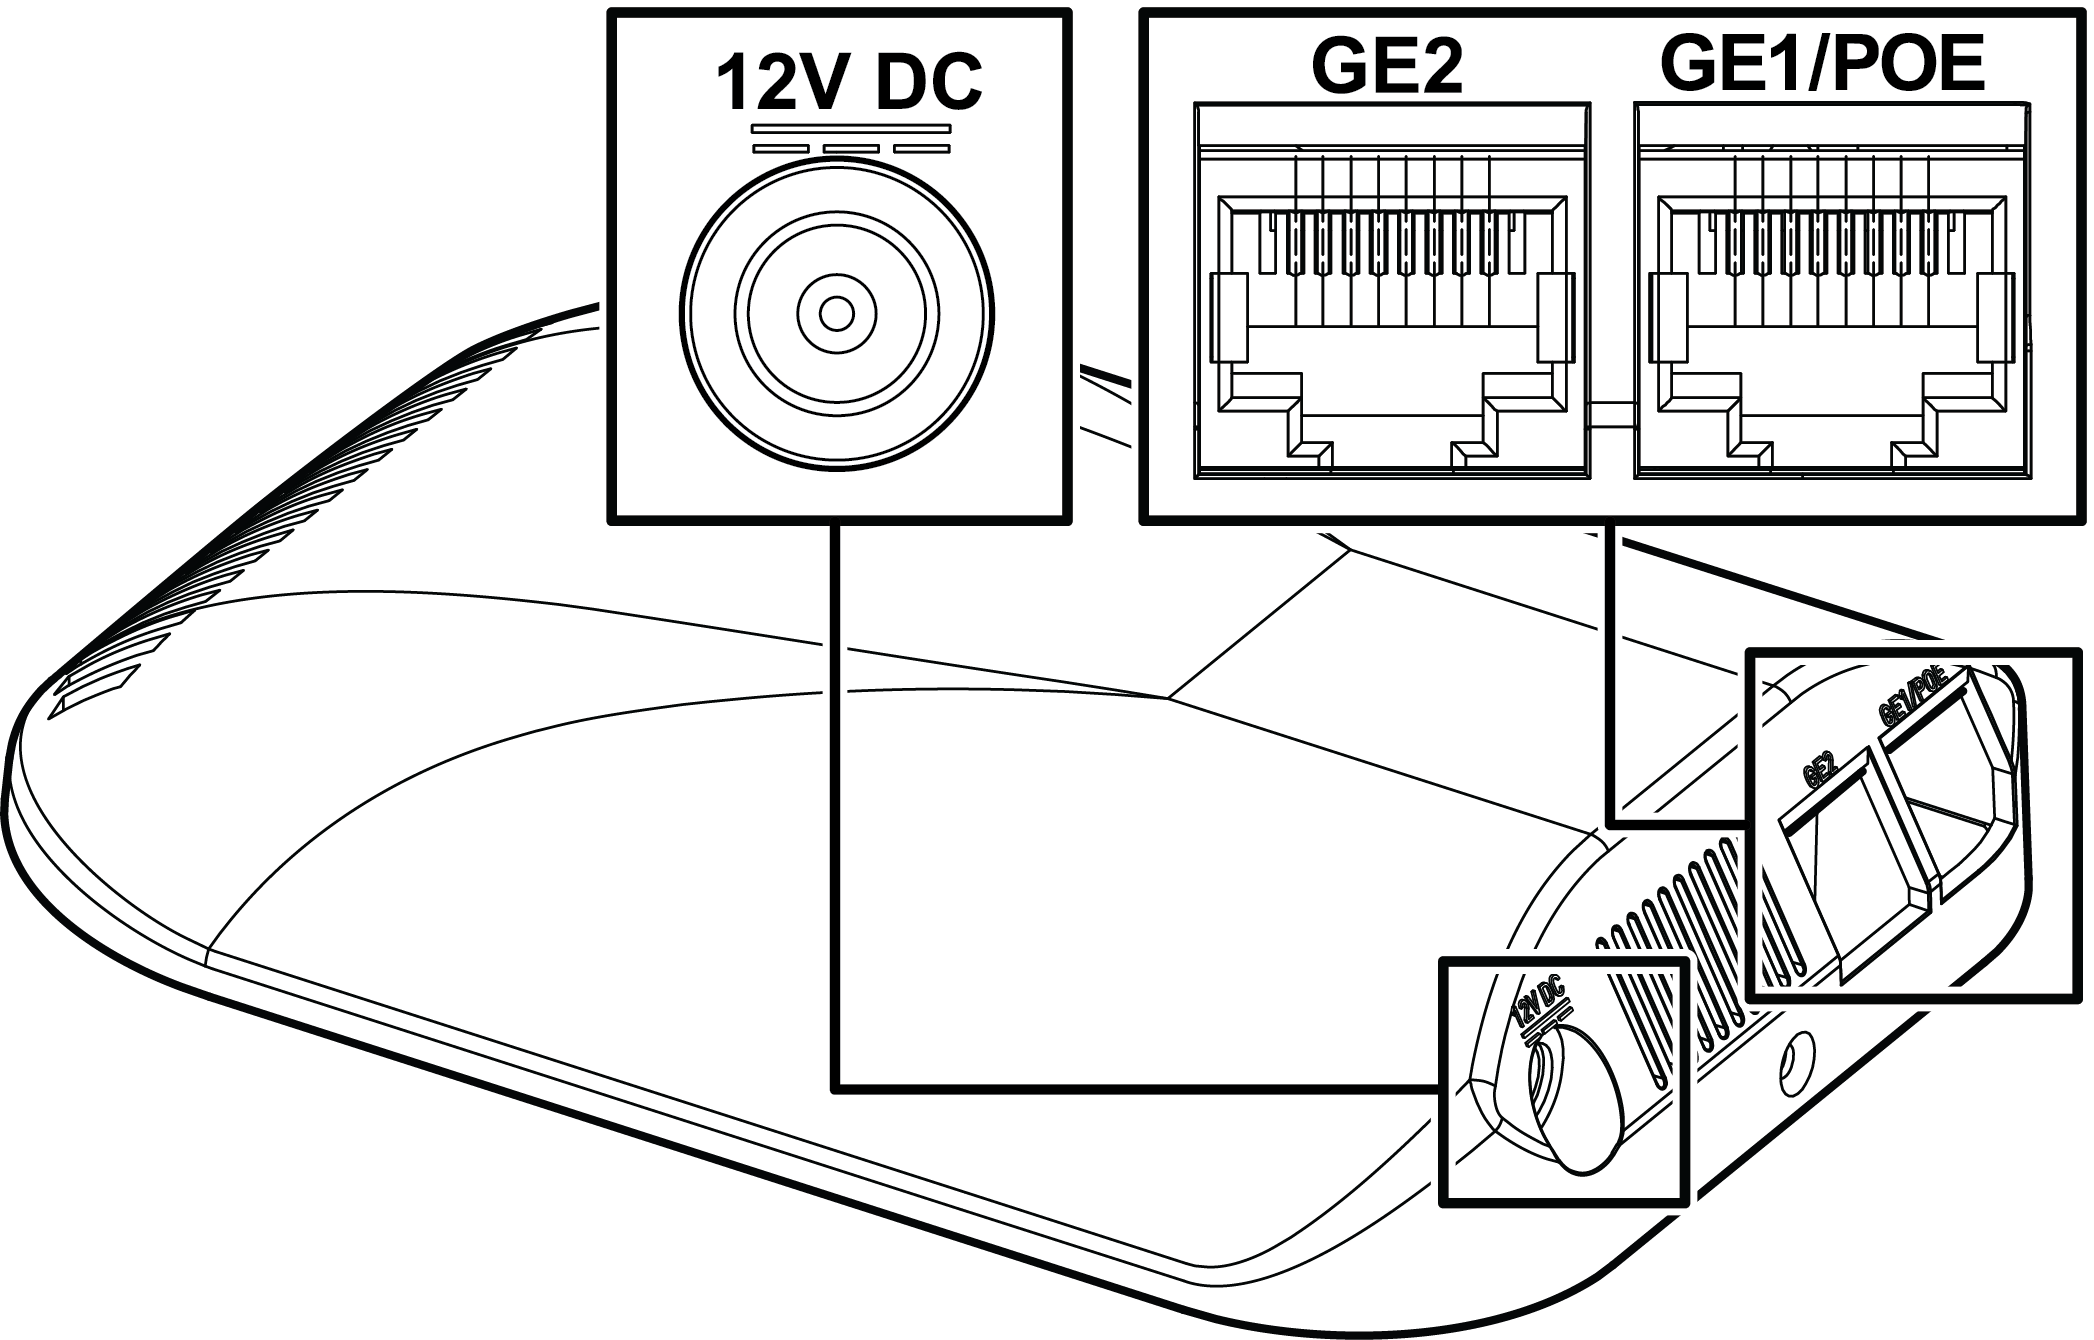 _Graphics/AP7612_connectors.png